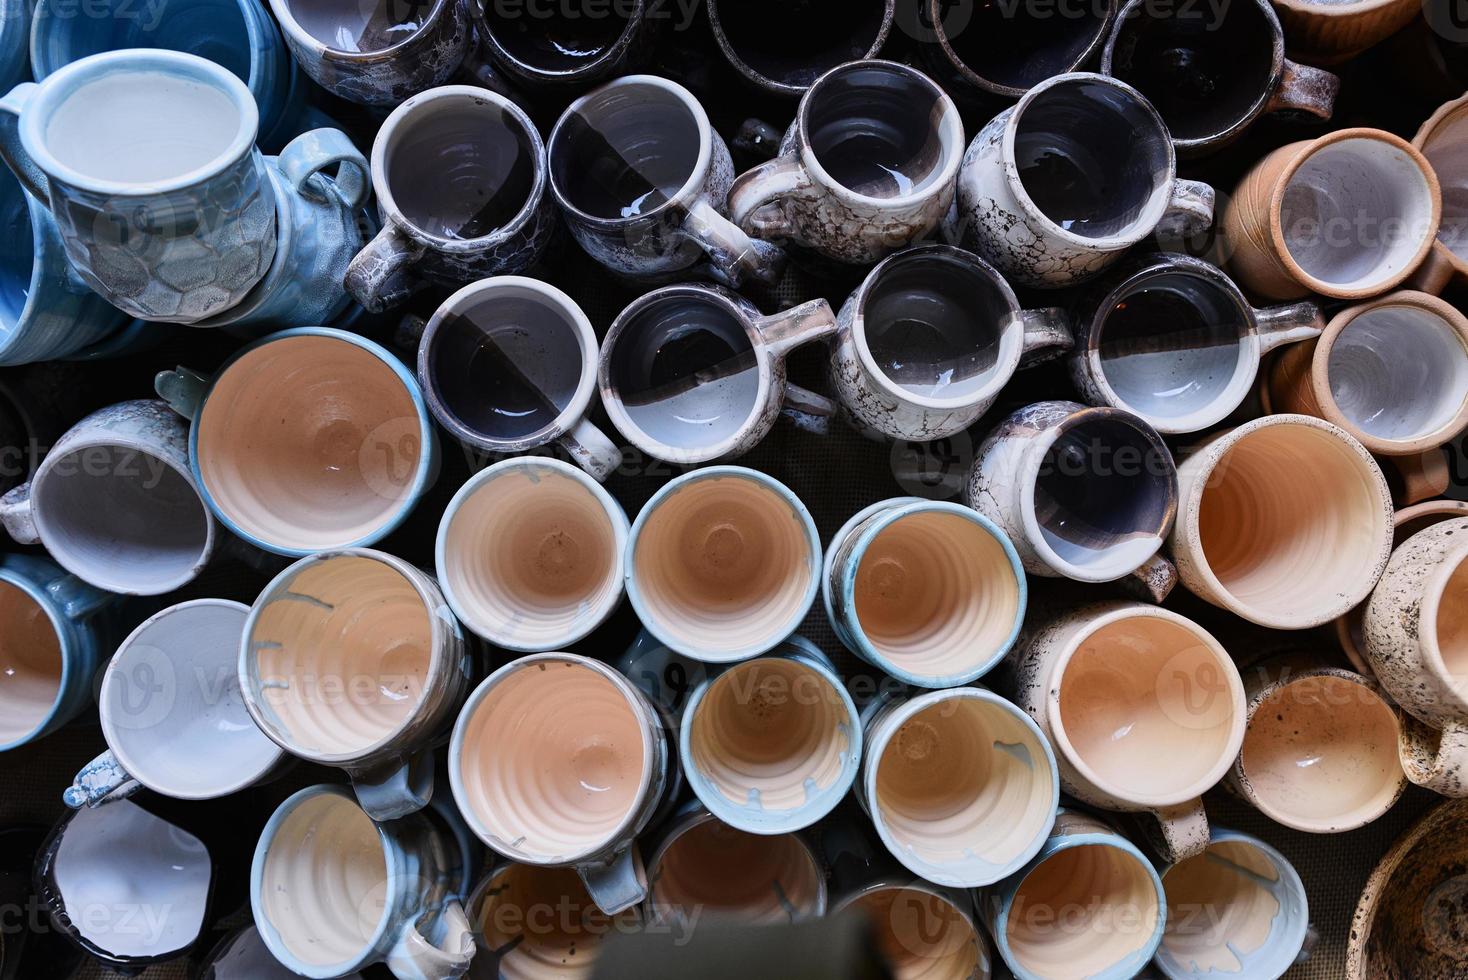 muchas tazas de cerámica coloridas hechas a mano, vista superior foto